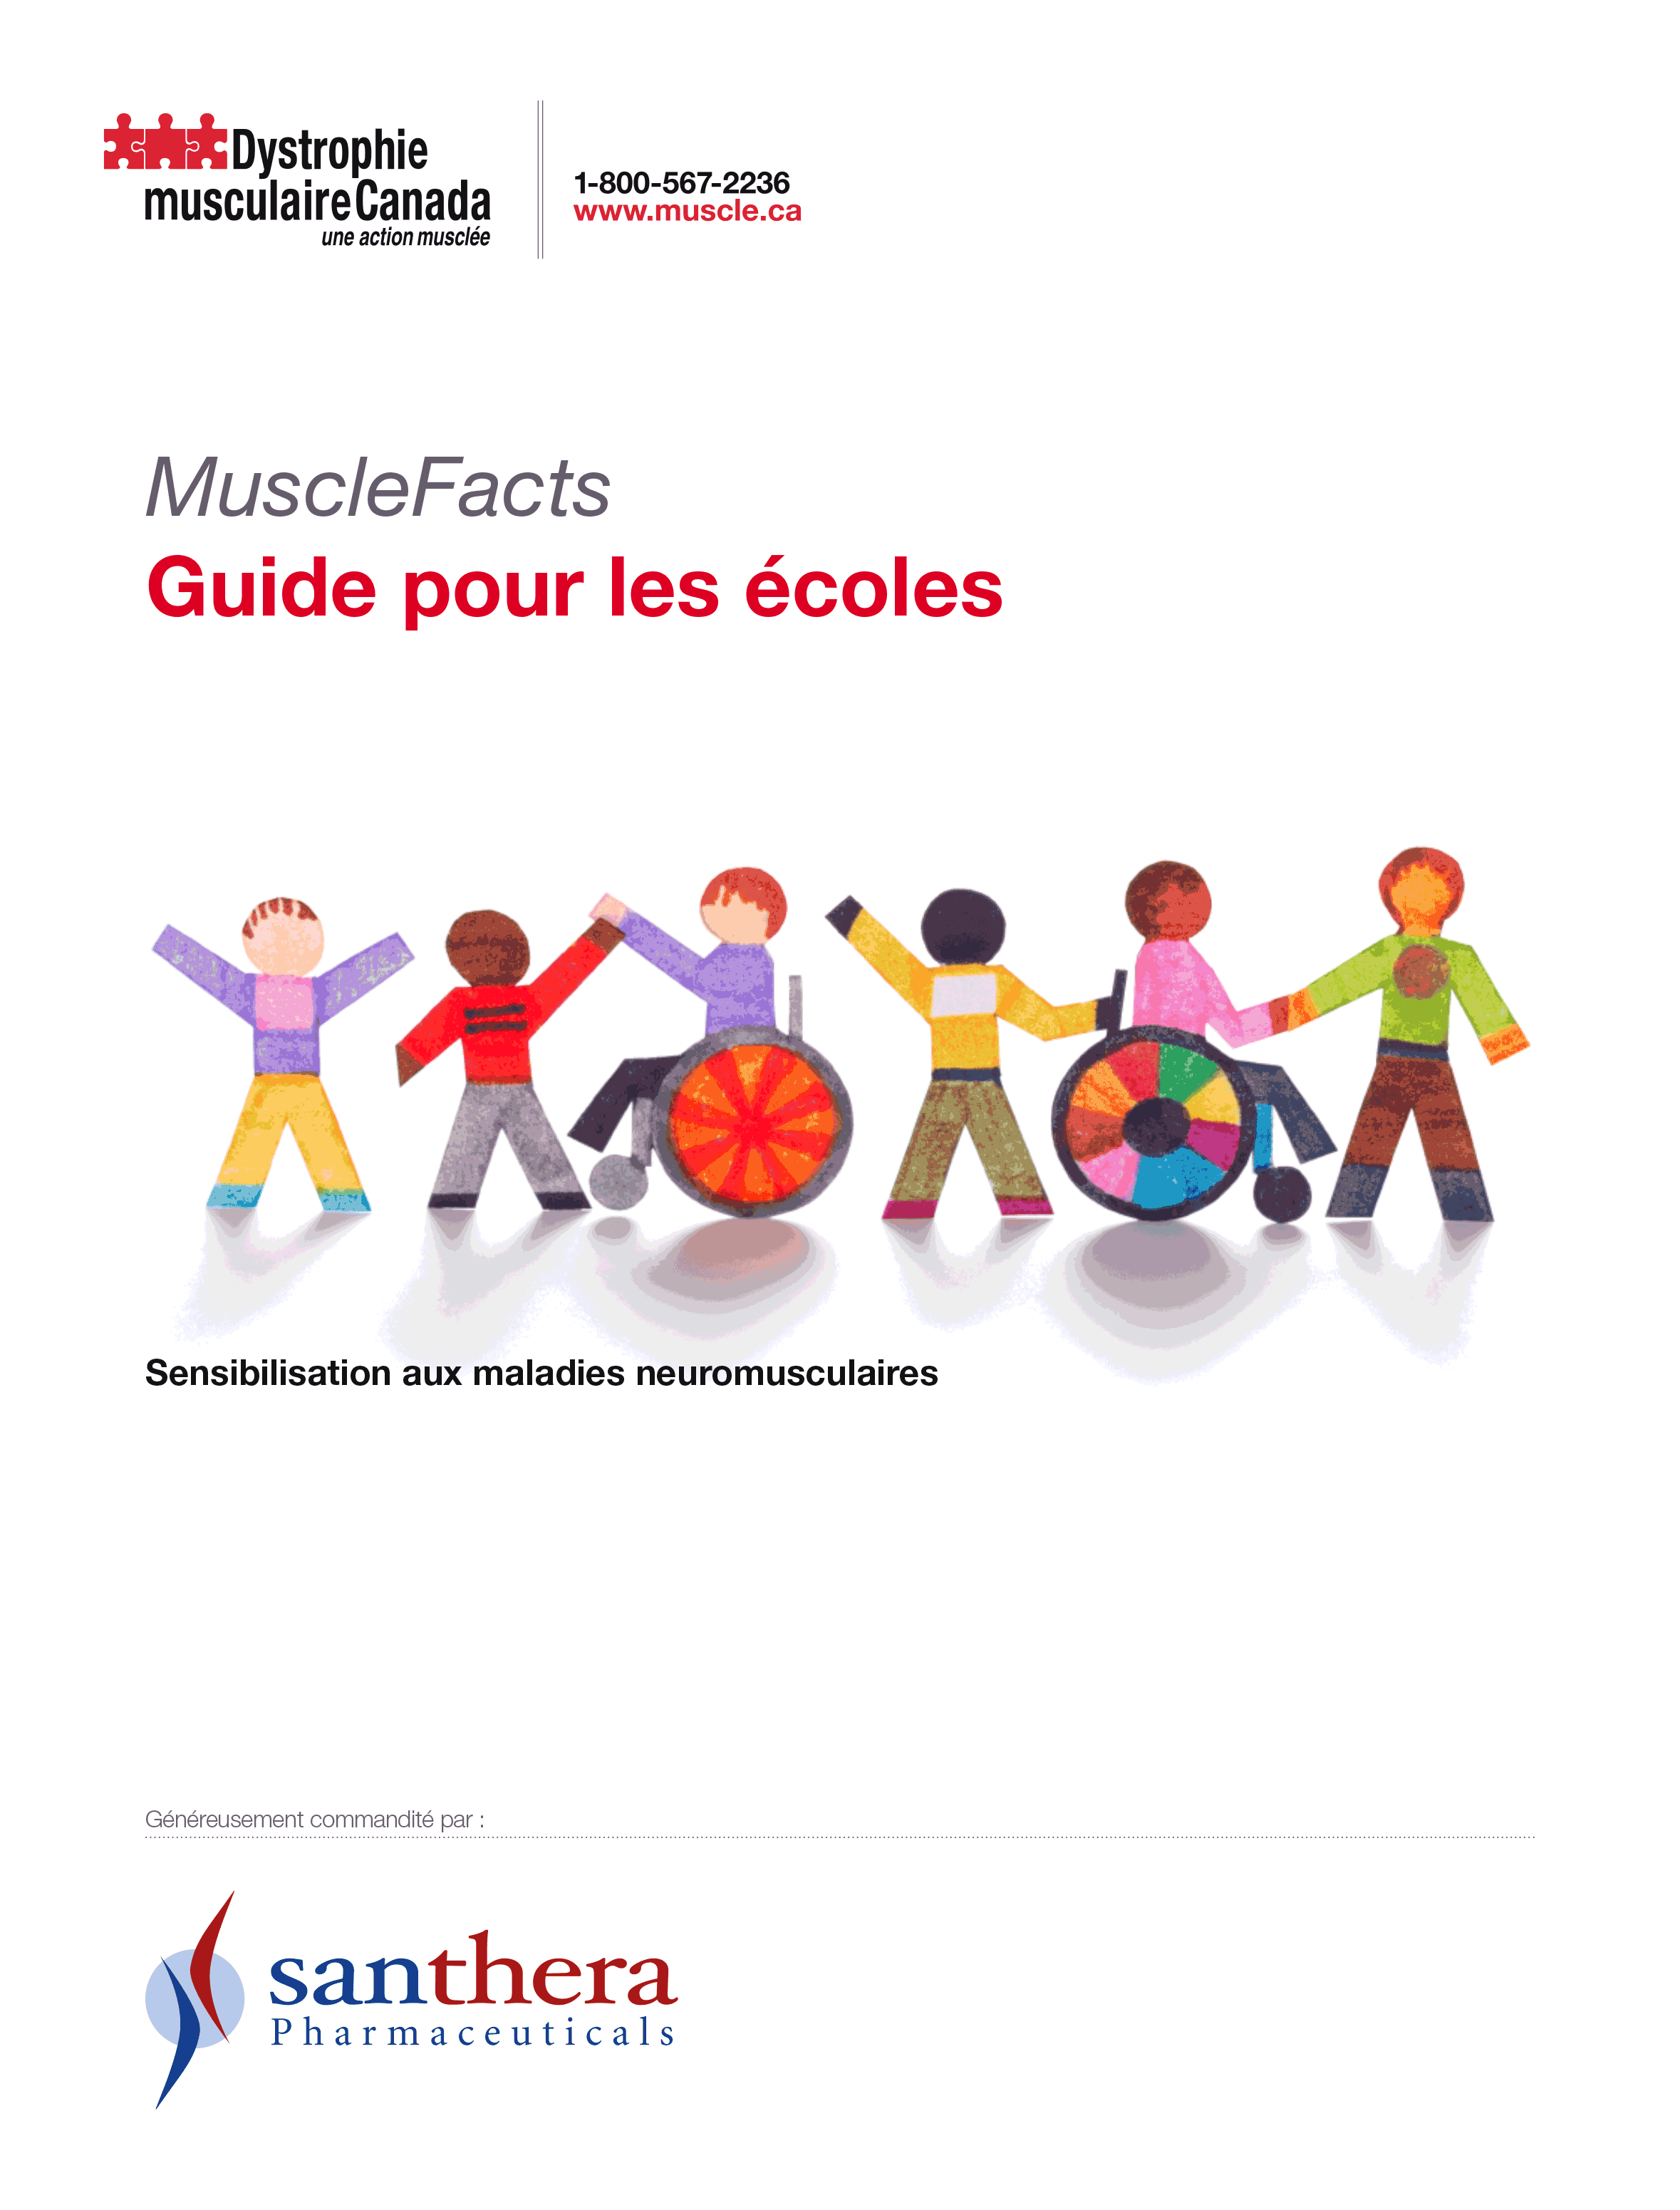 MuscleFacts : Guide pour les écoles